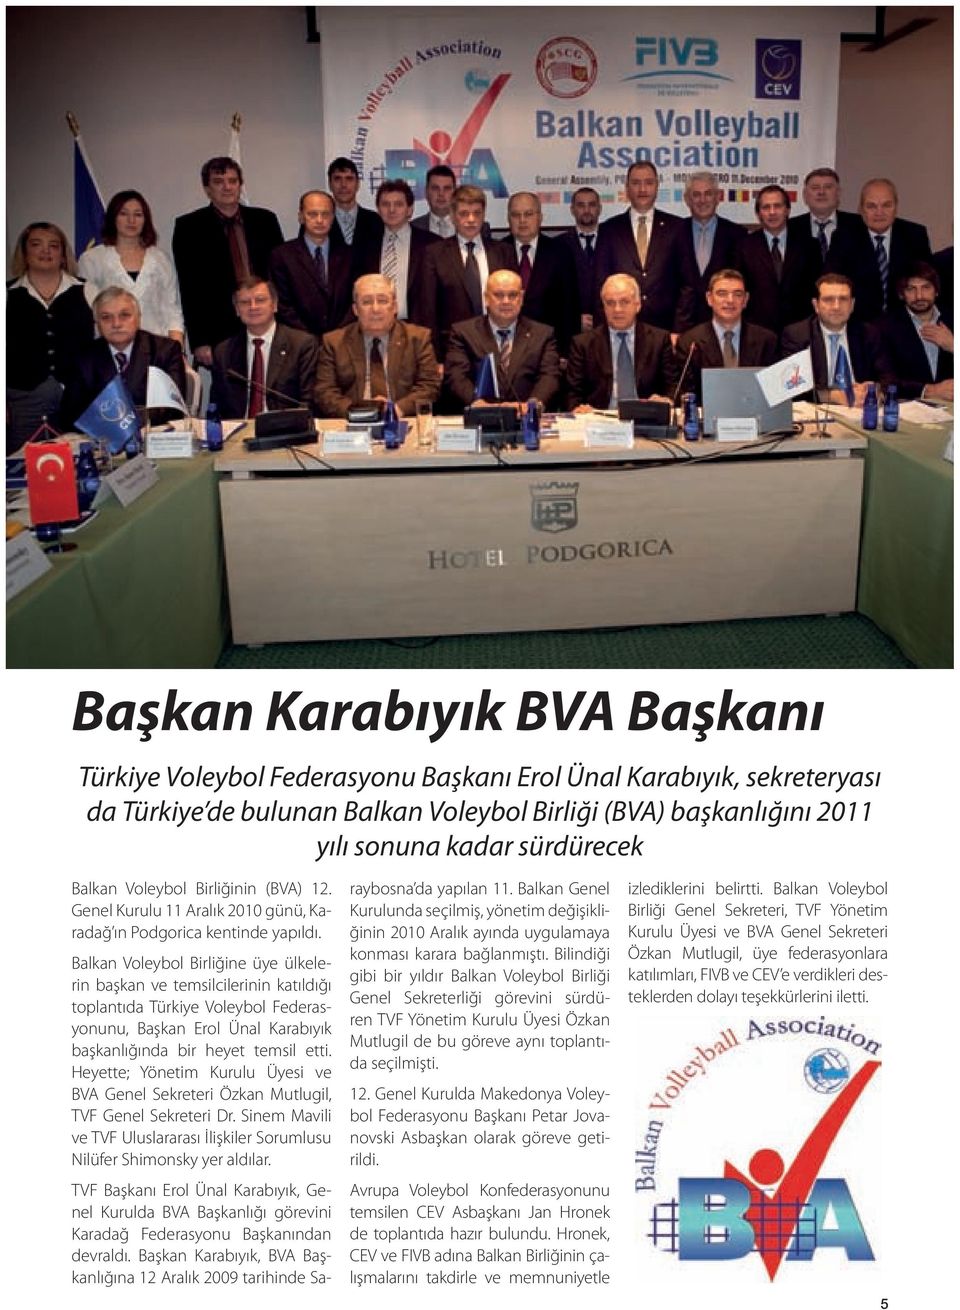 Balkan Voleybol Birliğine üye ülkelerin başkan ve temsilcilerinin katıldığı toplantıda Türkiye Voleybol Federasyonunu, Başkan Erol Ünal Karabıyık başkanlığında bir heyet temsil etti.